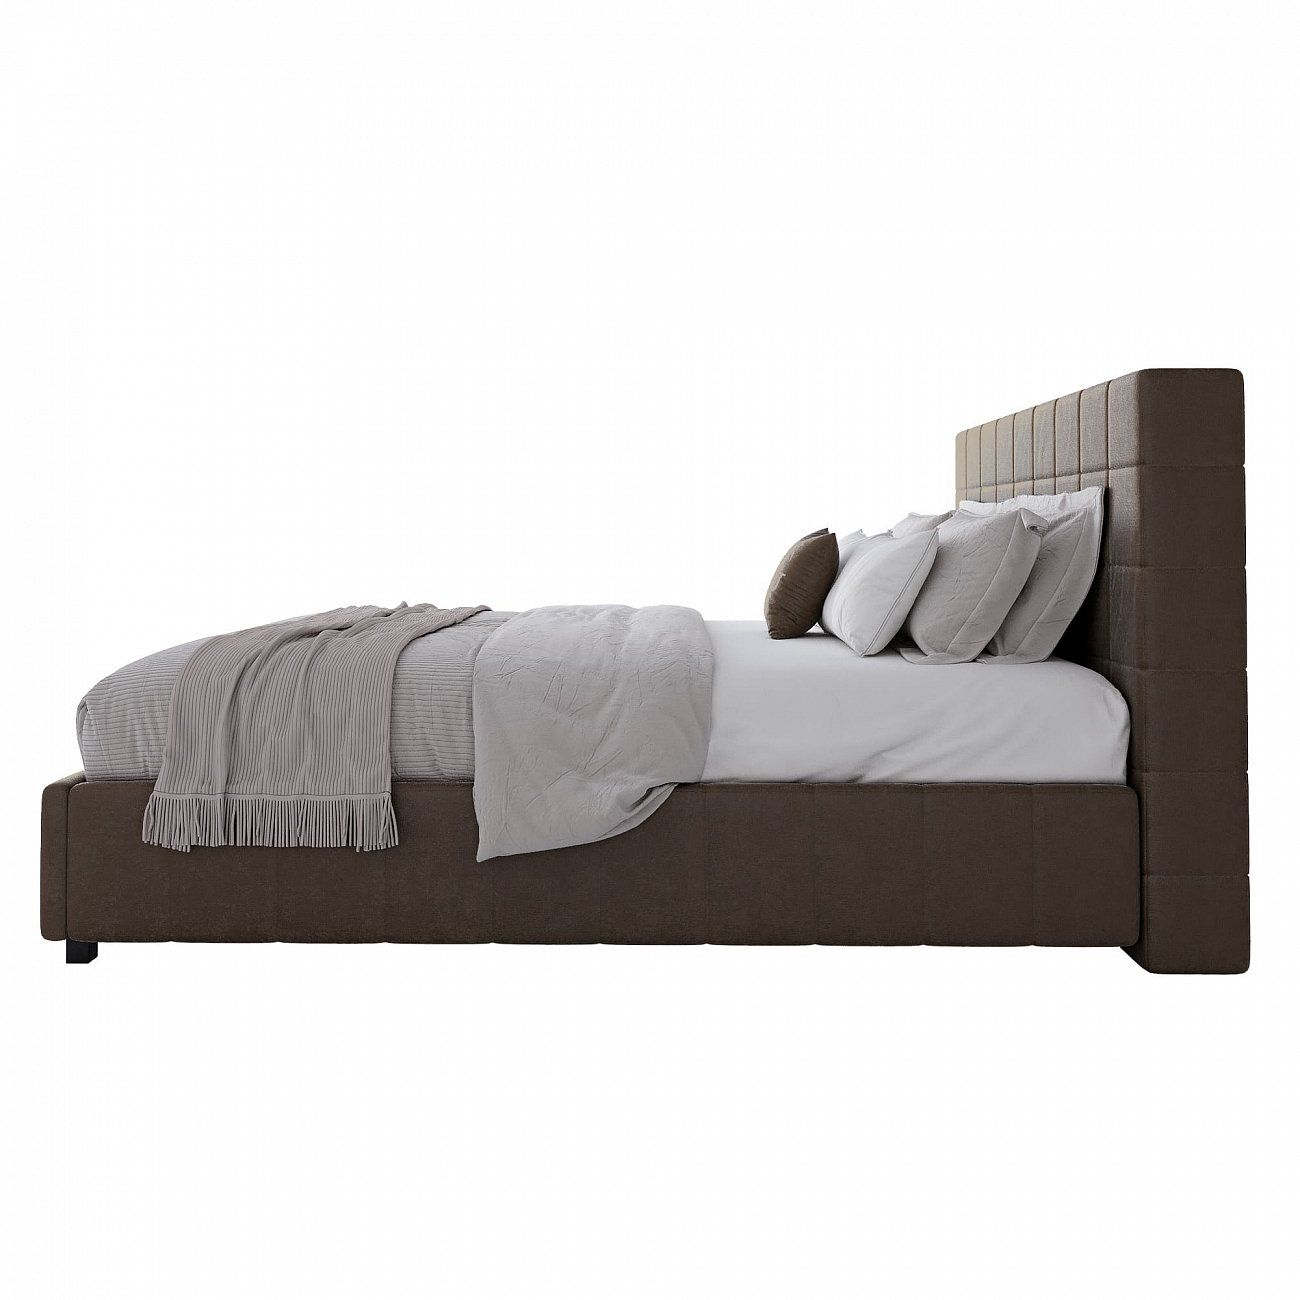 Кровать двуспальная 180х200 коричневая Shining Modern